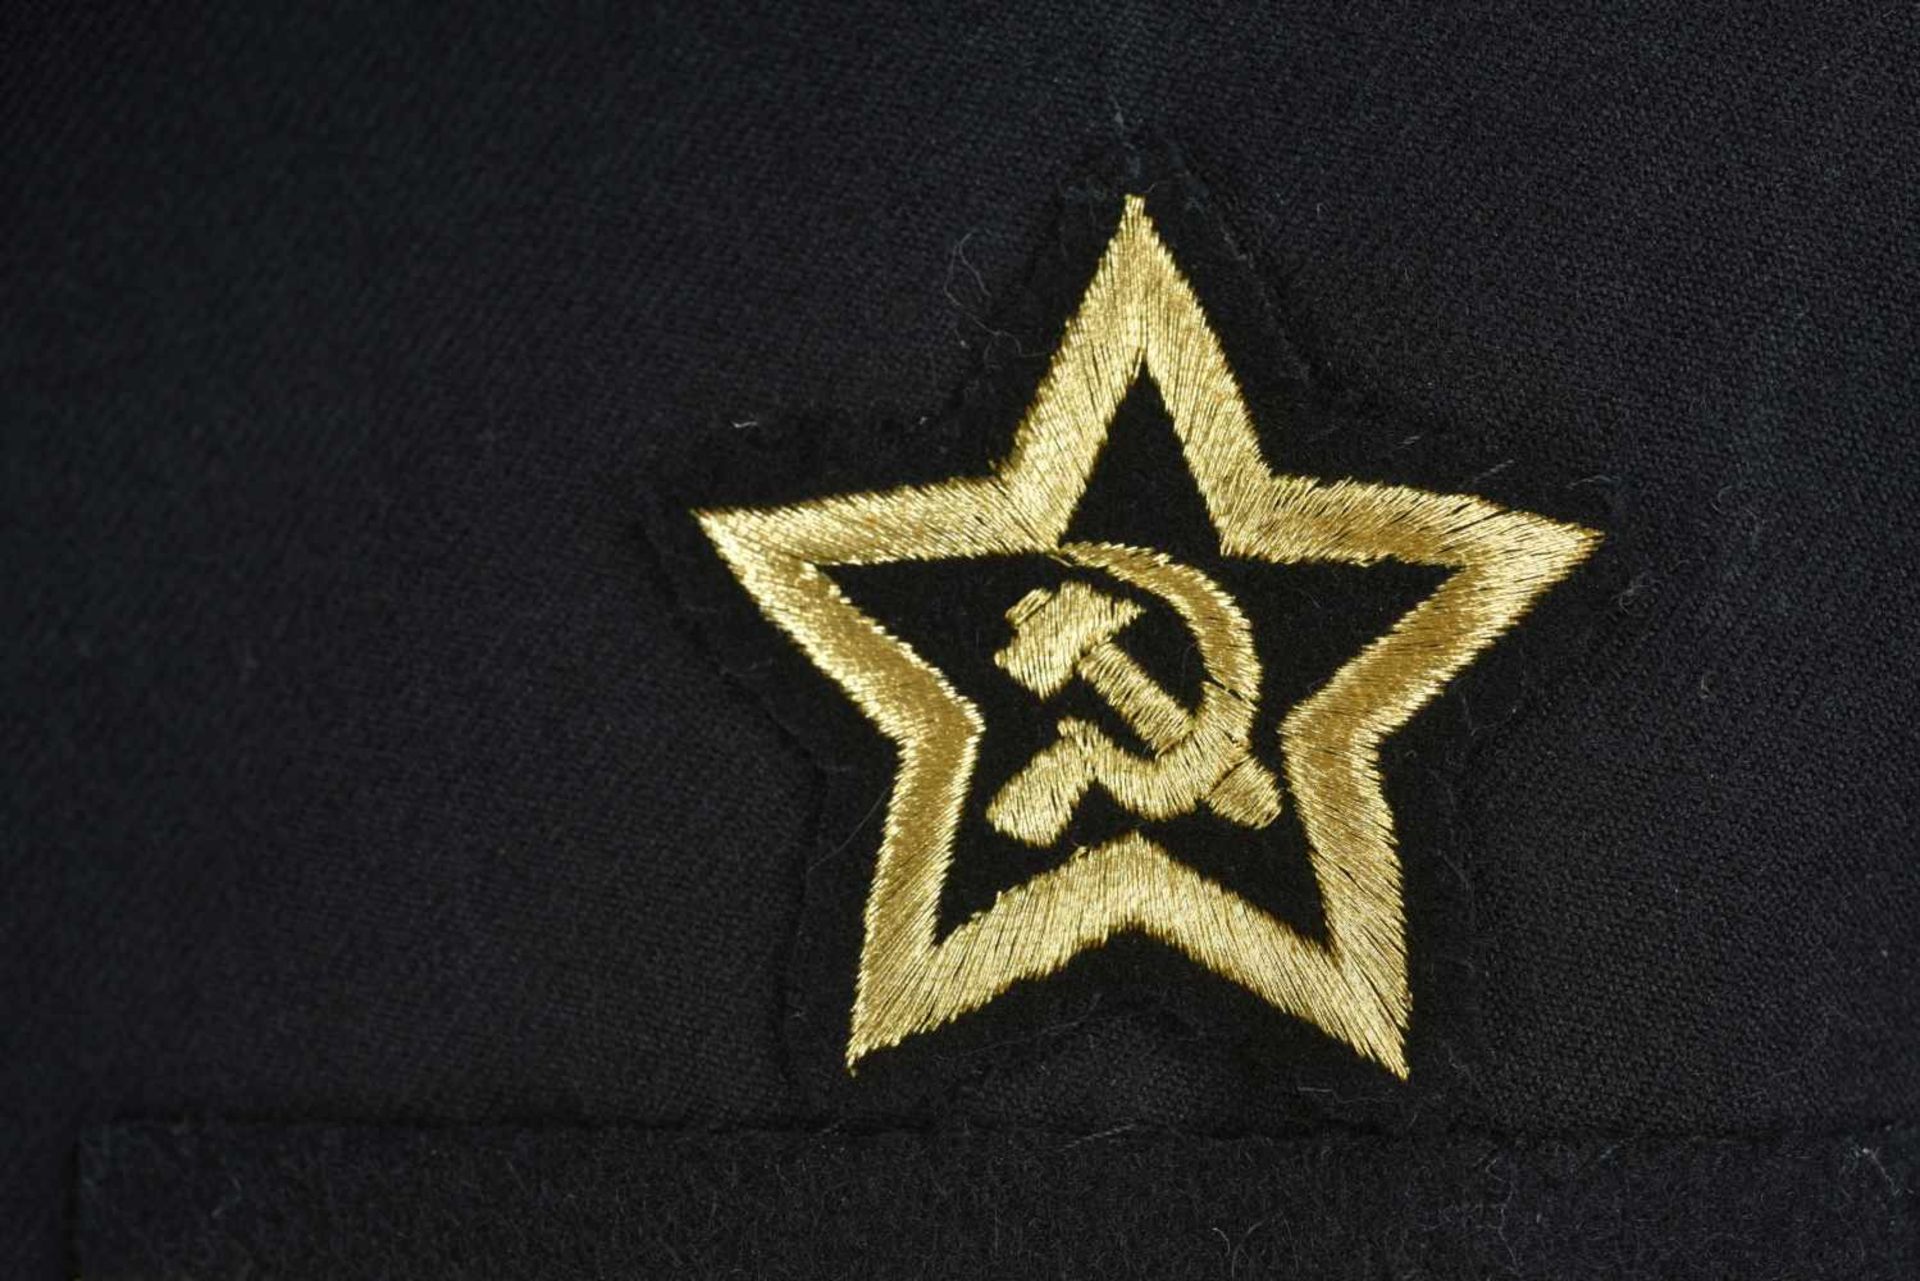 Uniforme de Contre amirale soviétique, année 1975 Vareuse en tissu noir, grades de col brodés en fil - Bild 4 aus 4